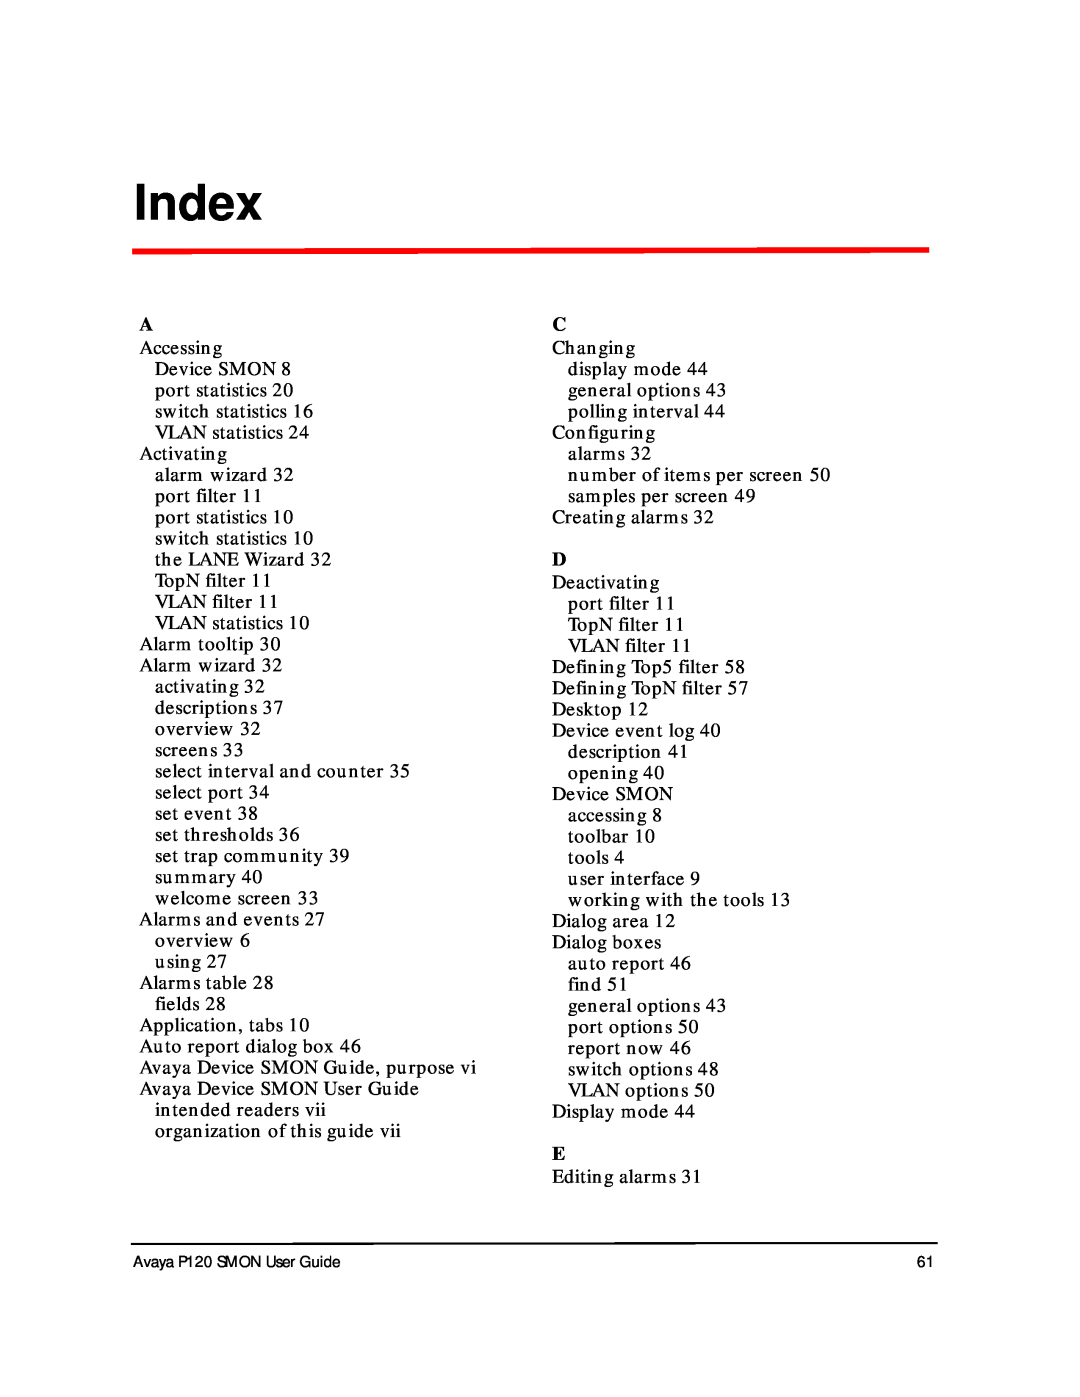 Avaya P120 SMON manual Index 